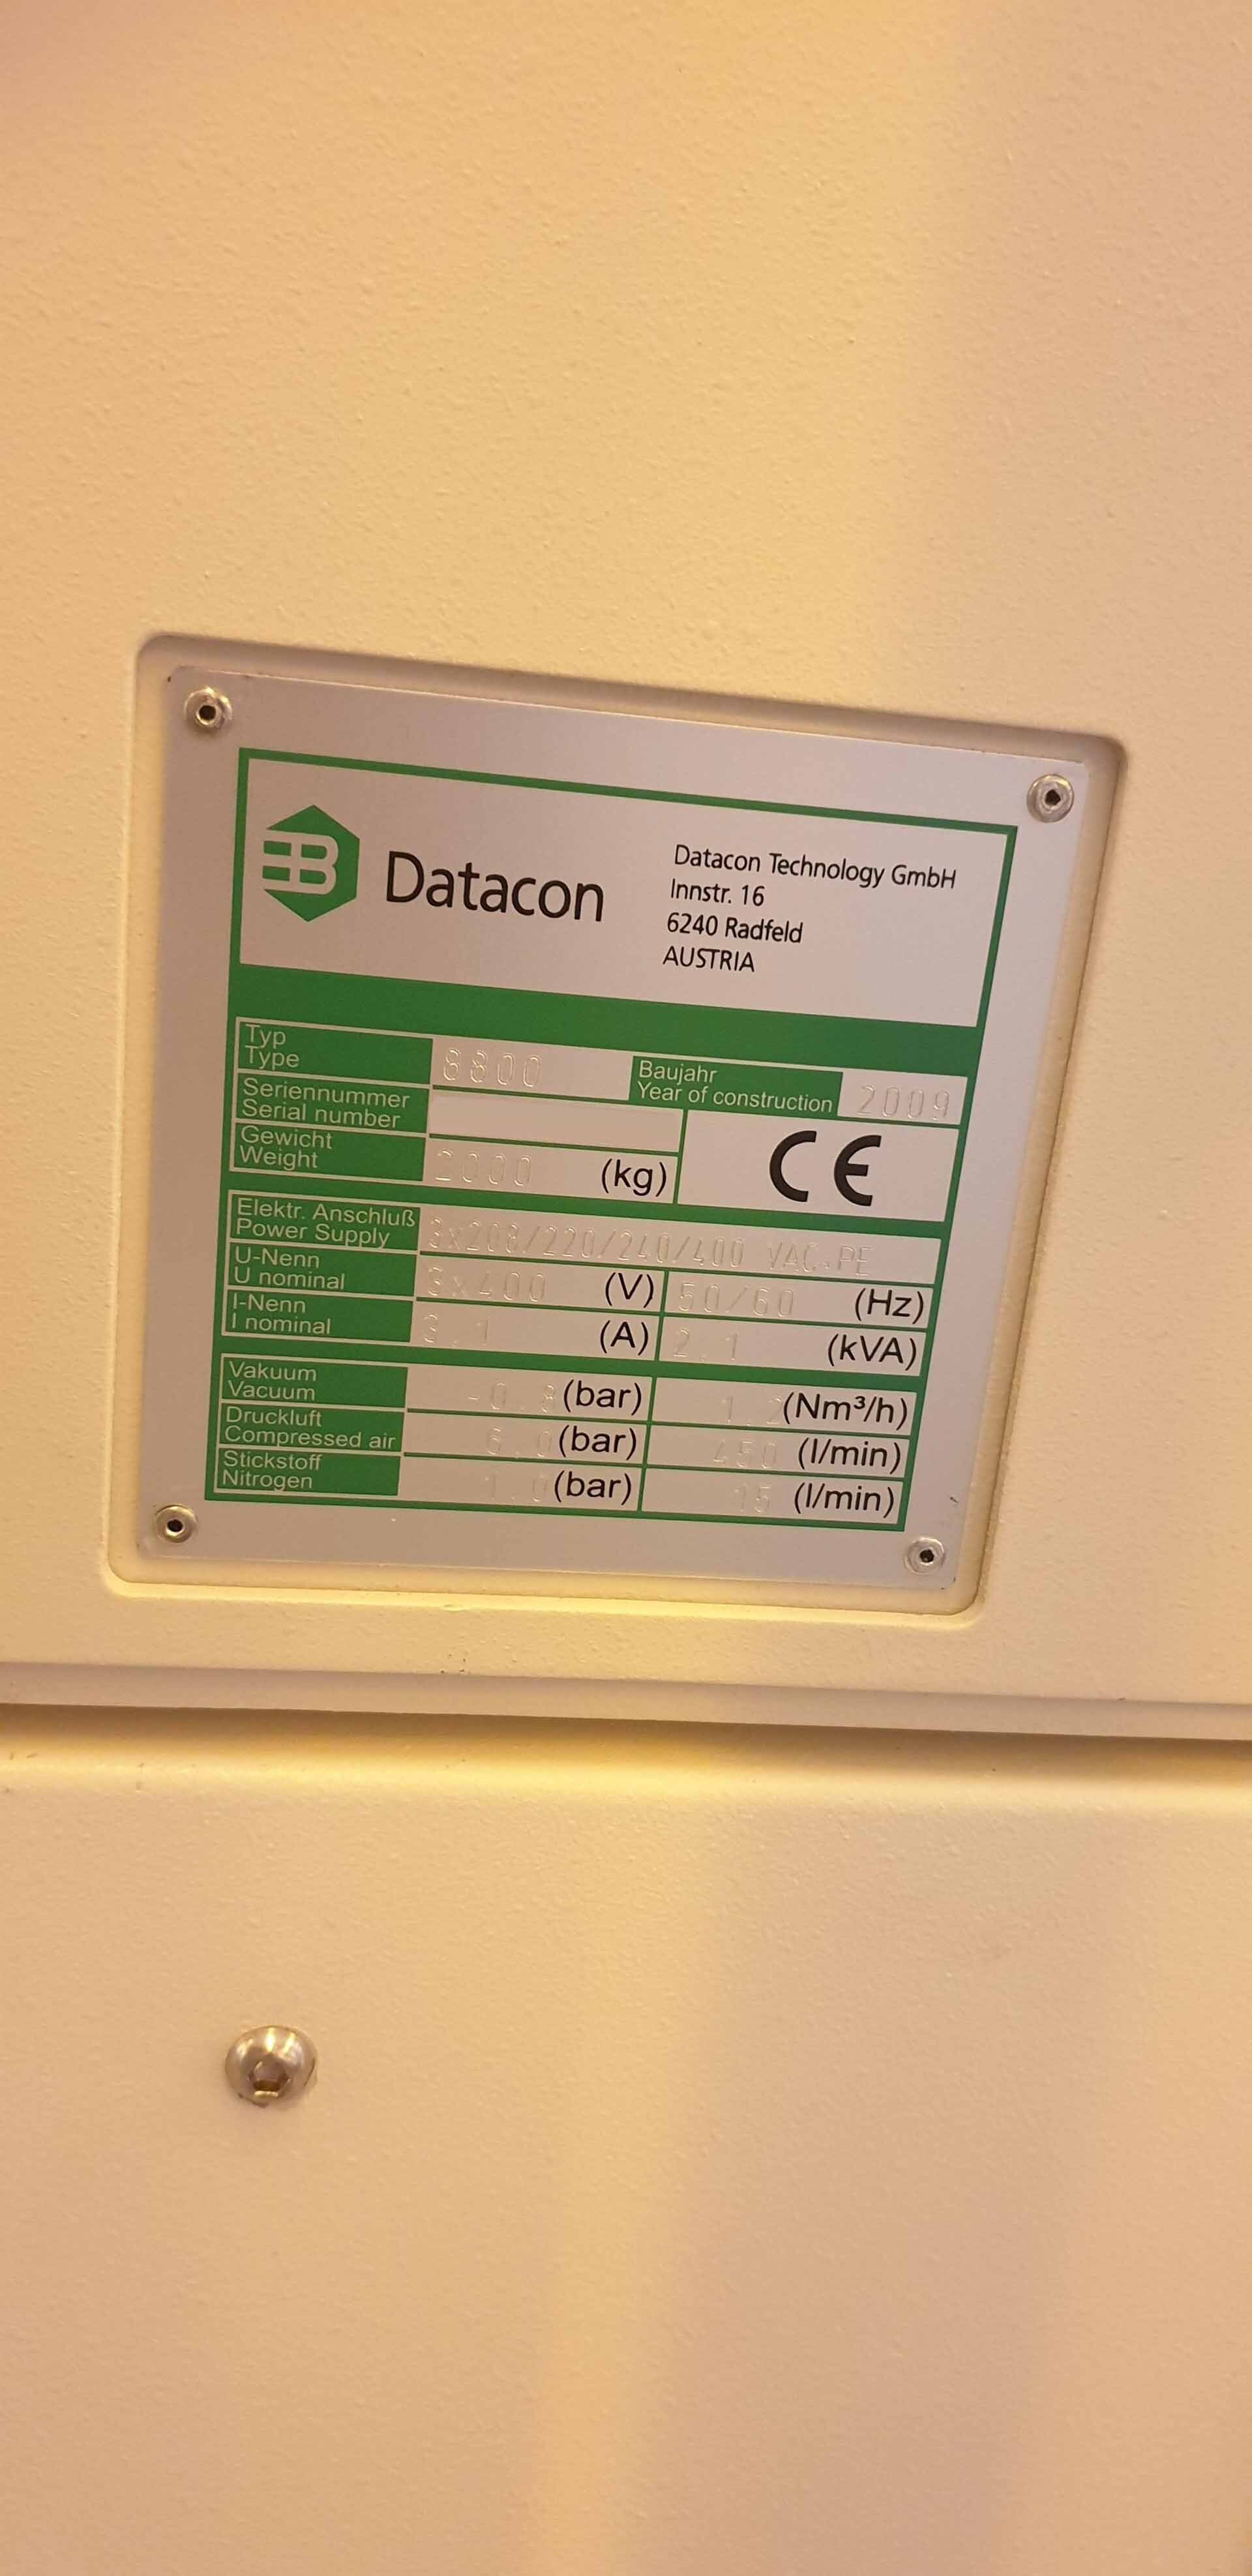 圖為 已使用的 DATACON / BESI 8800 待售